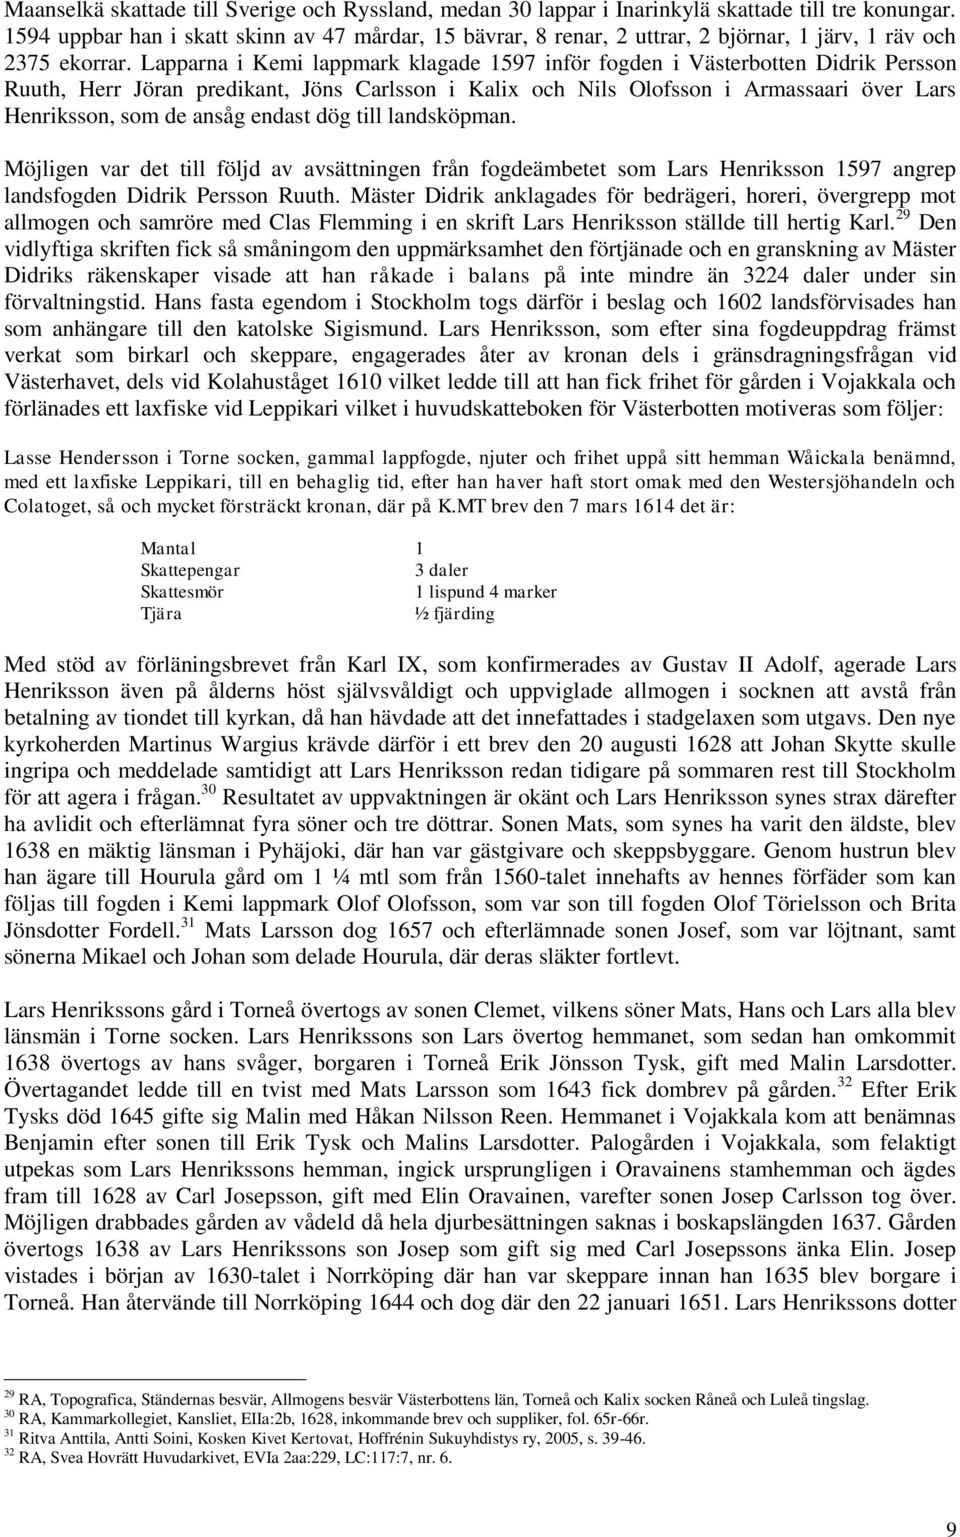 Lapparna i Kemi lappmark klagade 1597 inför fogden i Västerbotten Didrik Persson Ruuth, Herr Jöran predikant, Jöns Carlsson i Kalix och Nils Olofsson i Armassaari över Lars Henriksson, som de ansåg